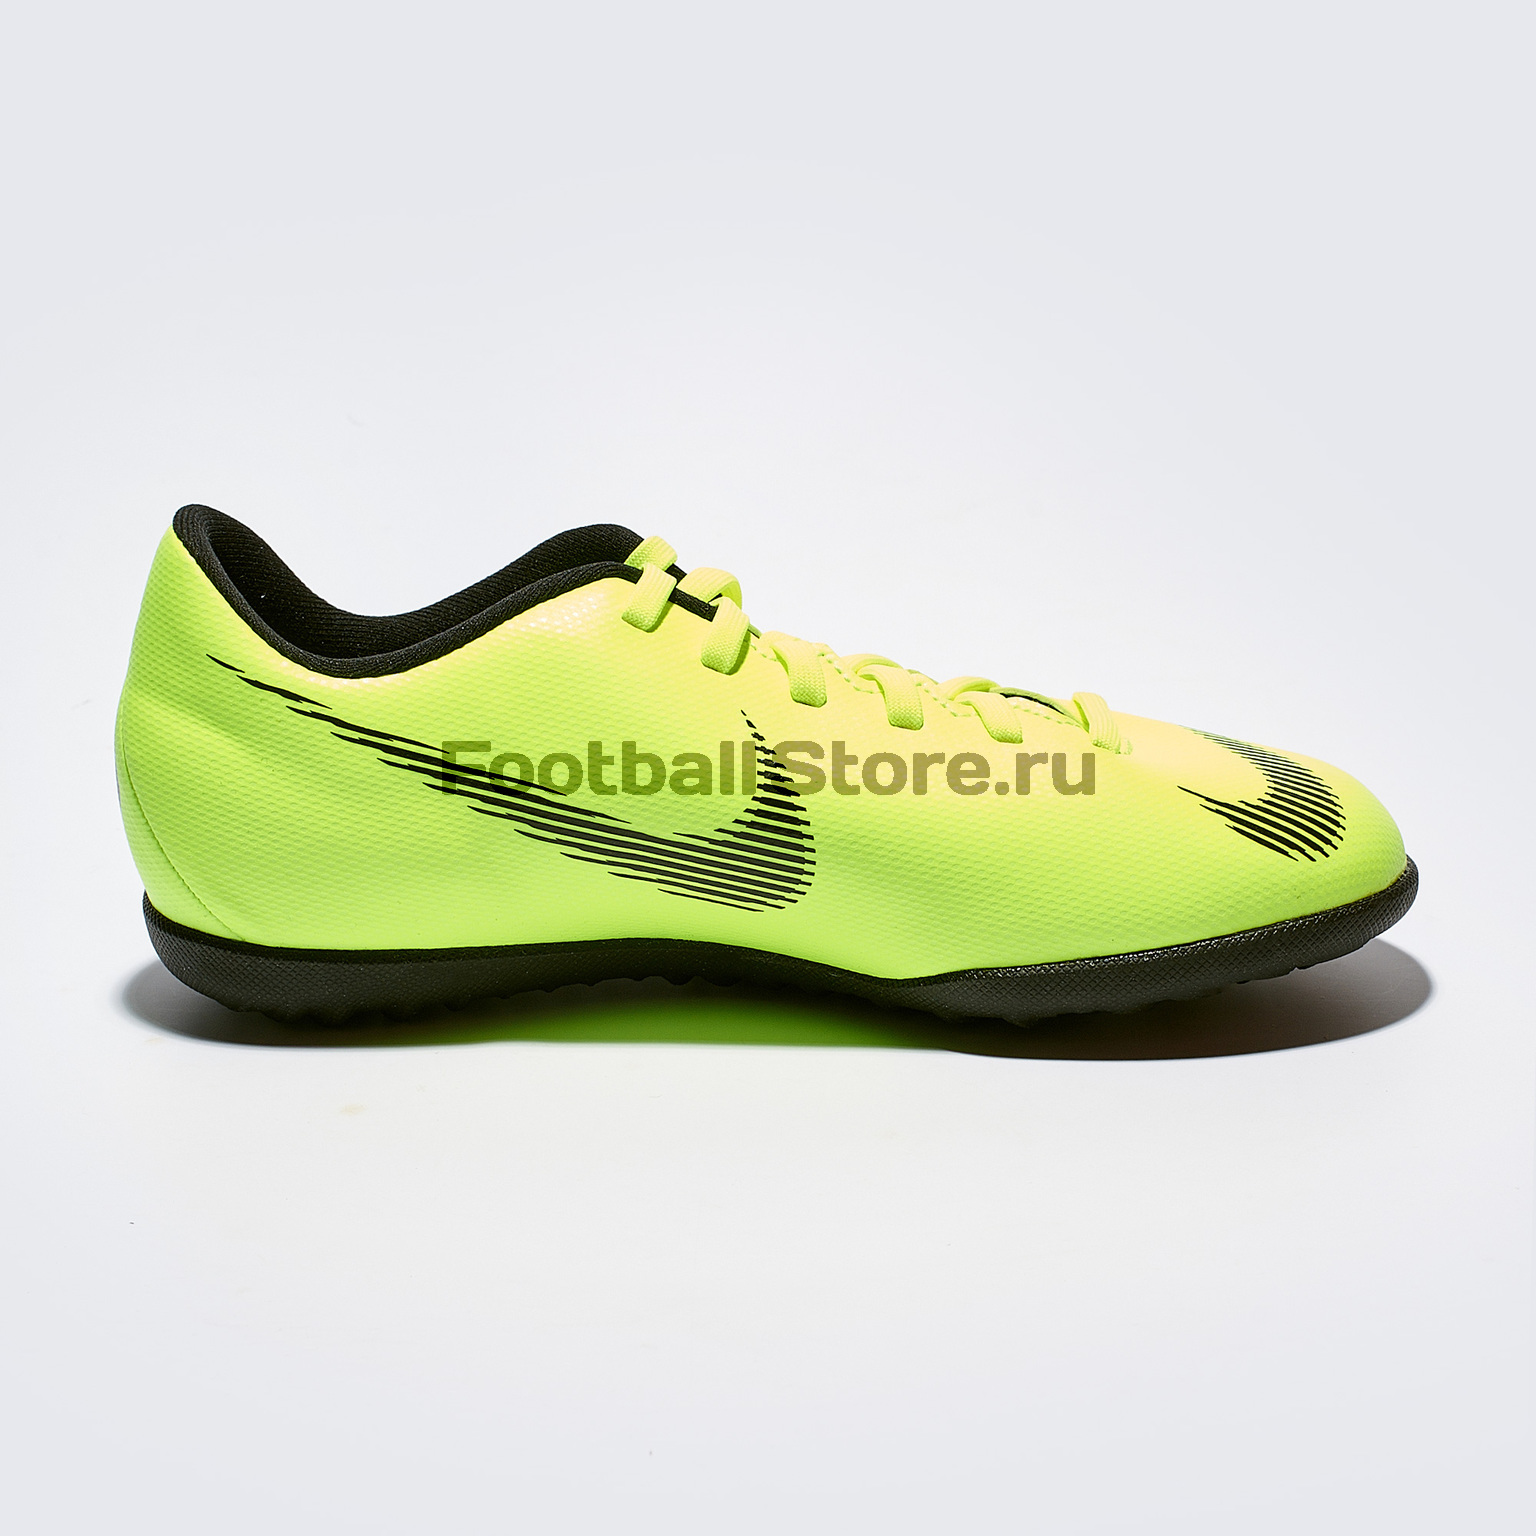 Купить Шиповки Nike Vapor 12 Club GS TF AH7355-701 – в футбольном footballstore, цена, фото